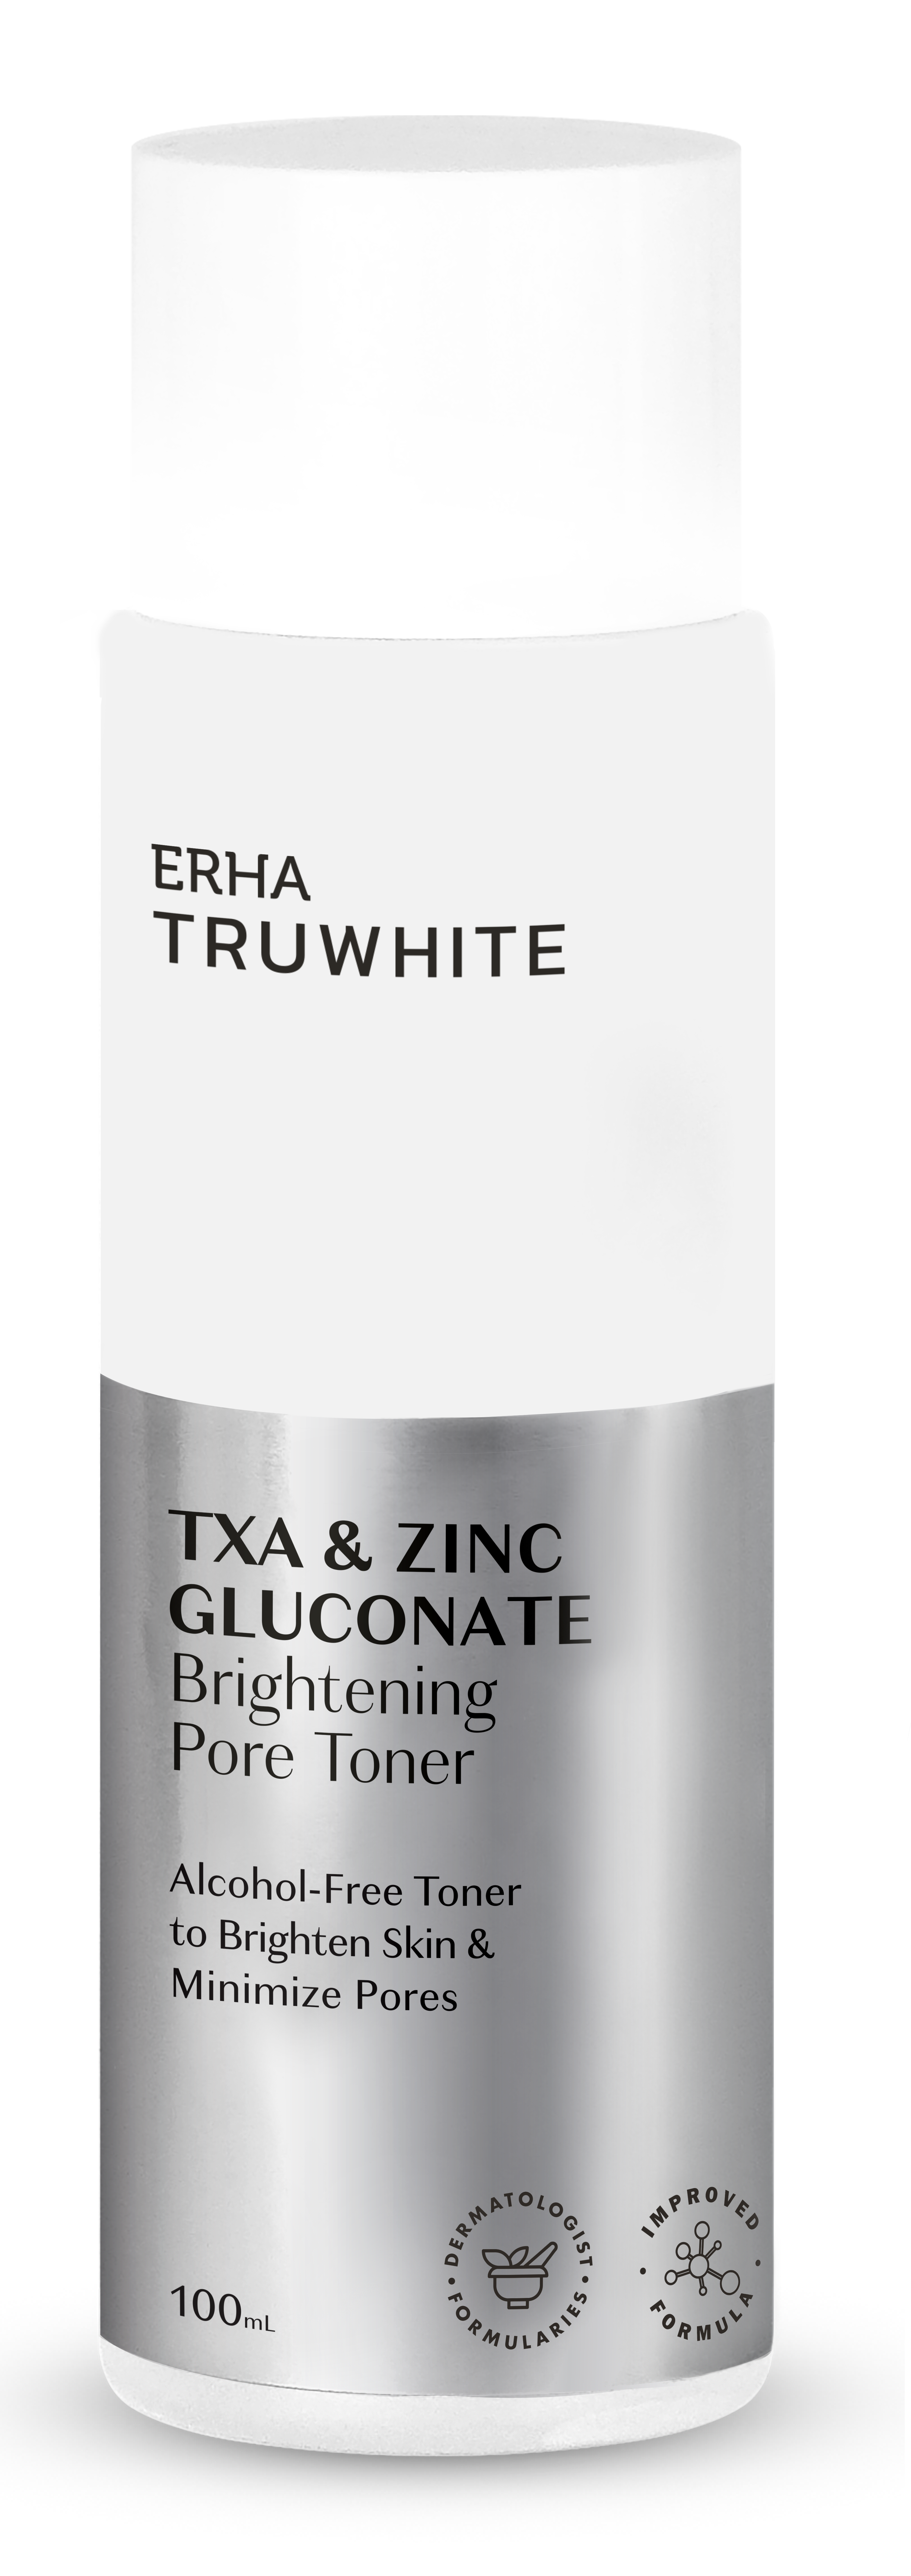 TXA & Zinc Gluconate Brightening Pore Toner